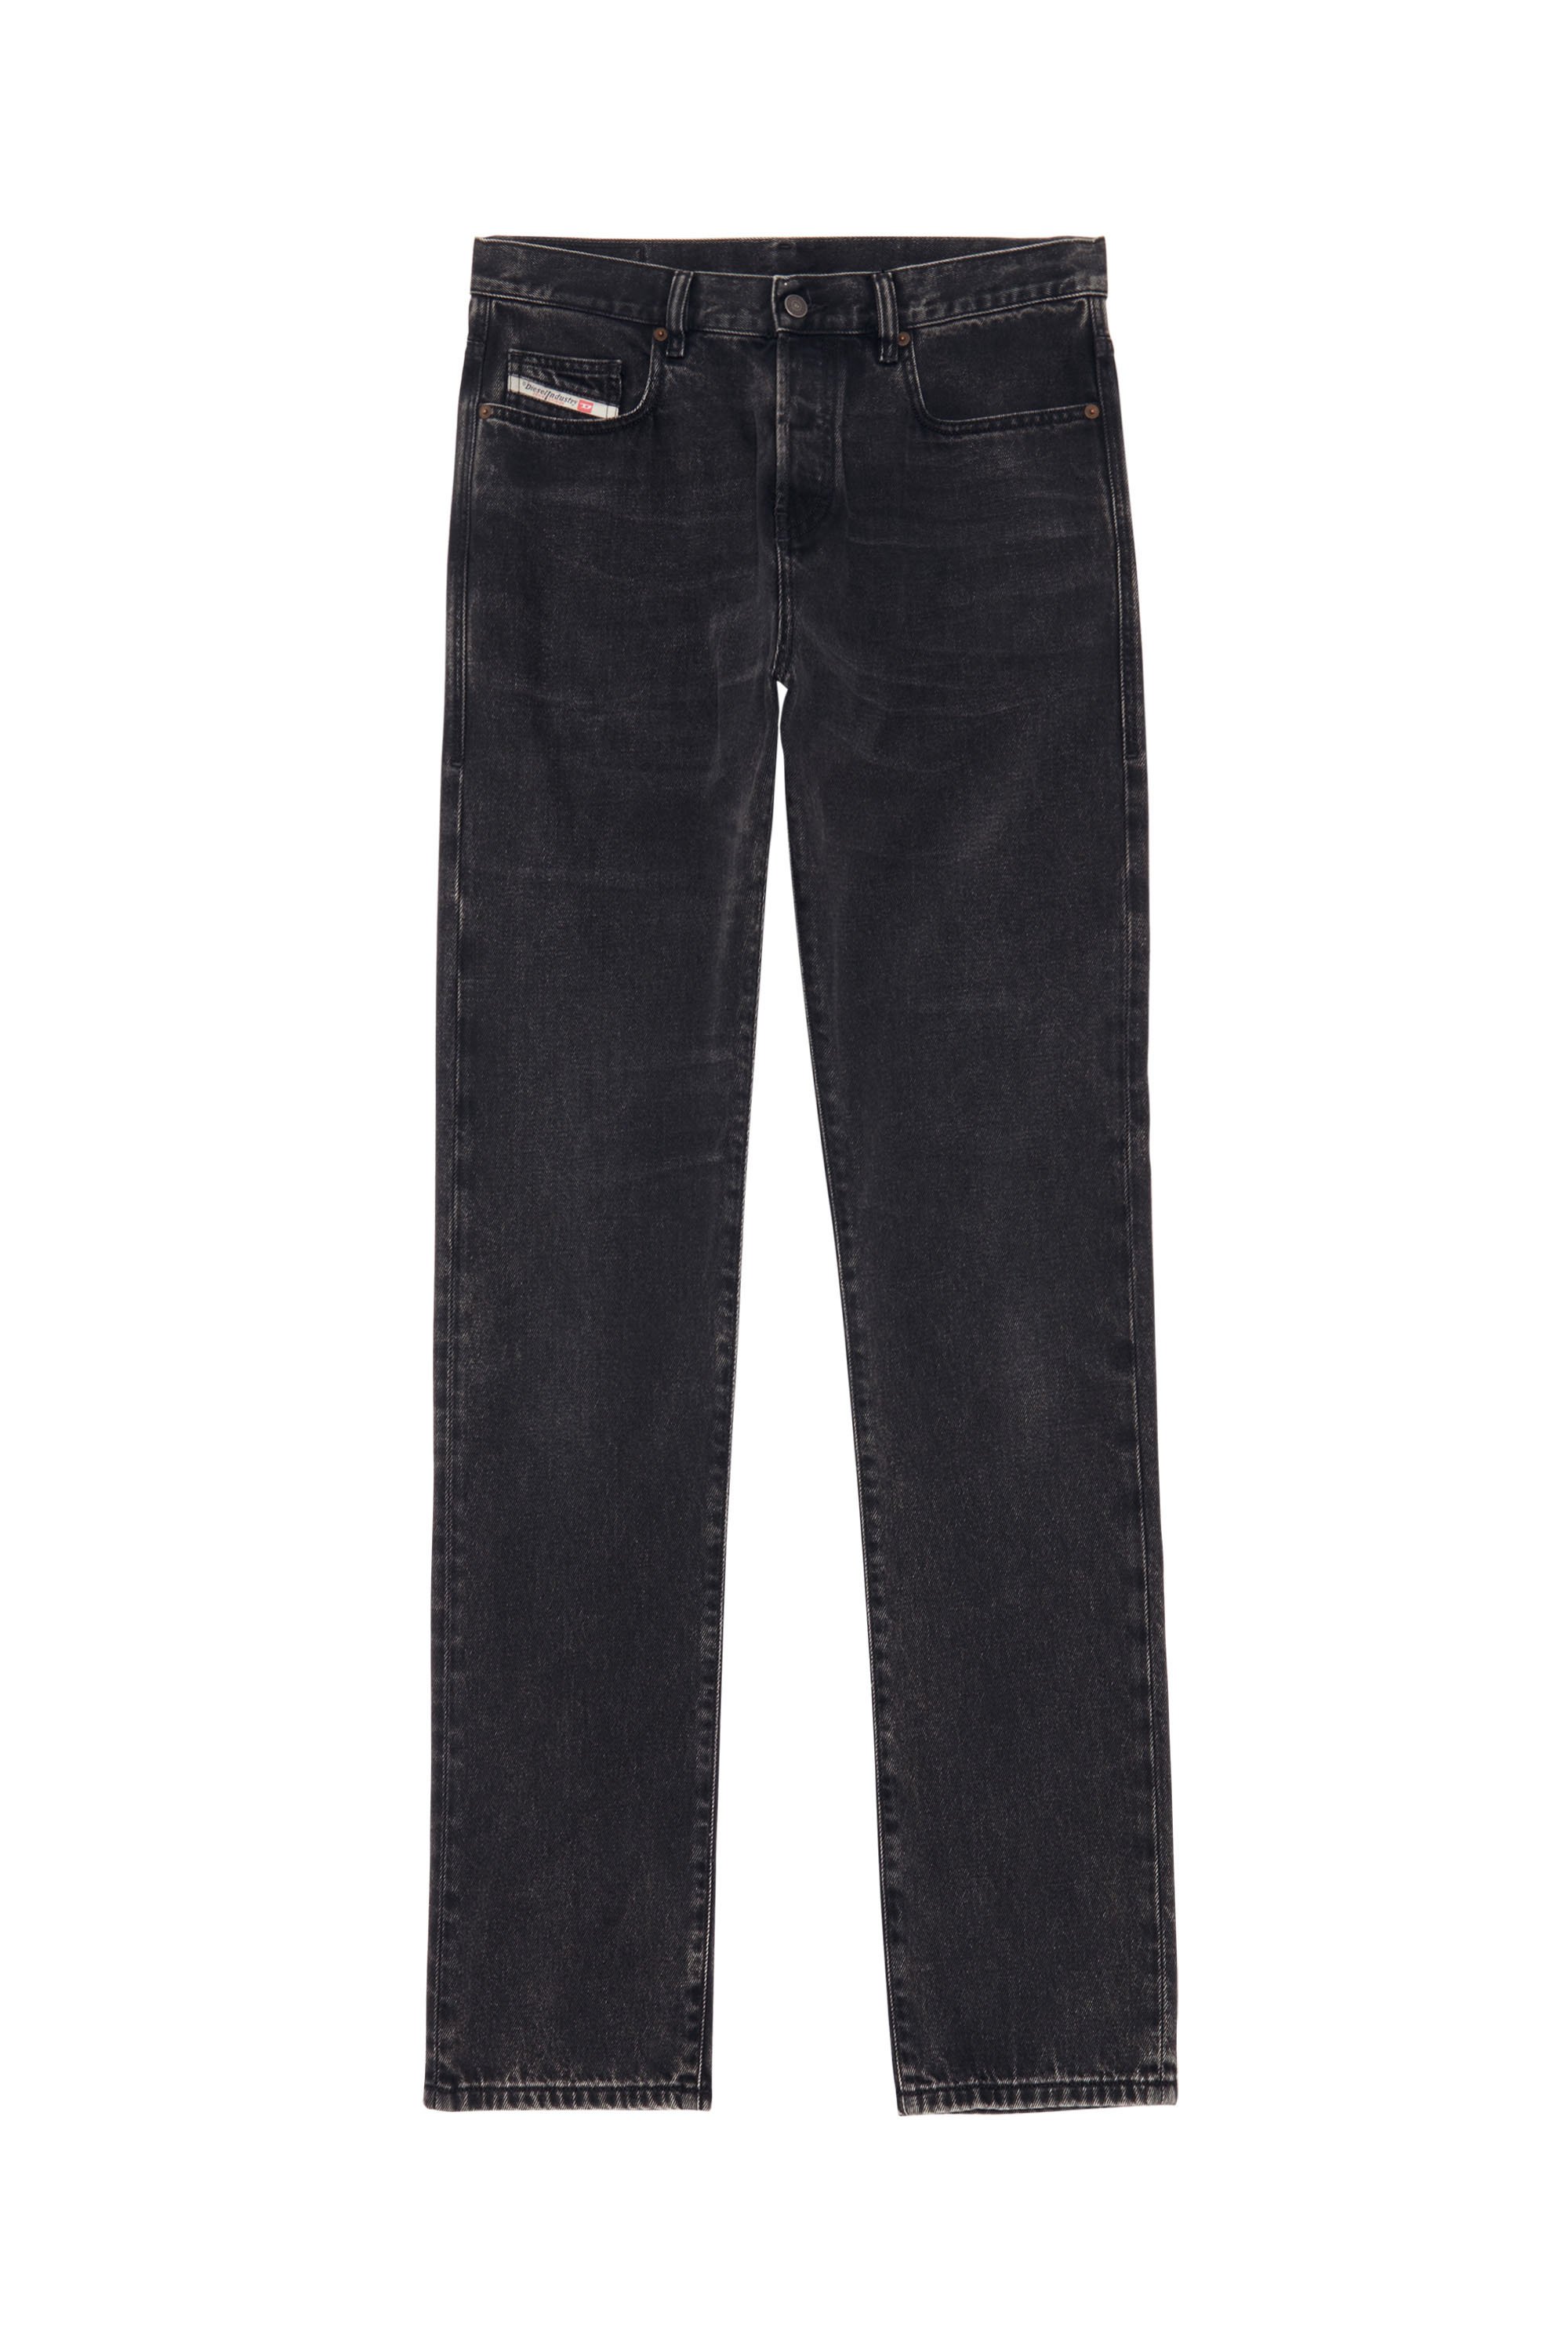 2015 BABHILA Z870G Skinny Jeans, Black/Dark grey - Jeans